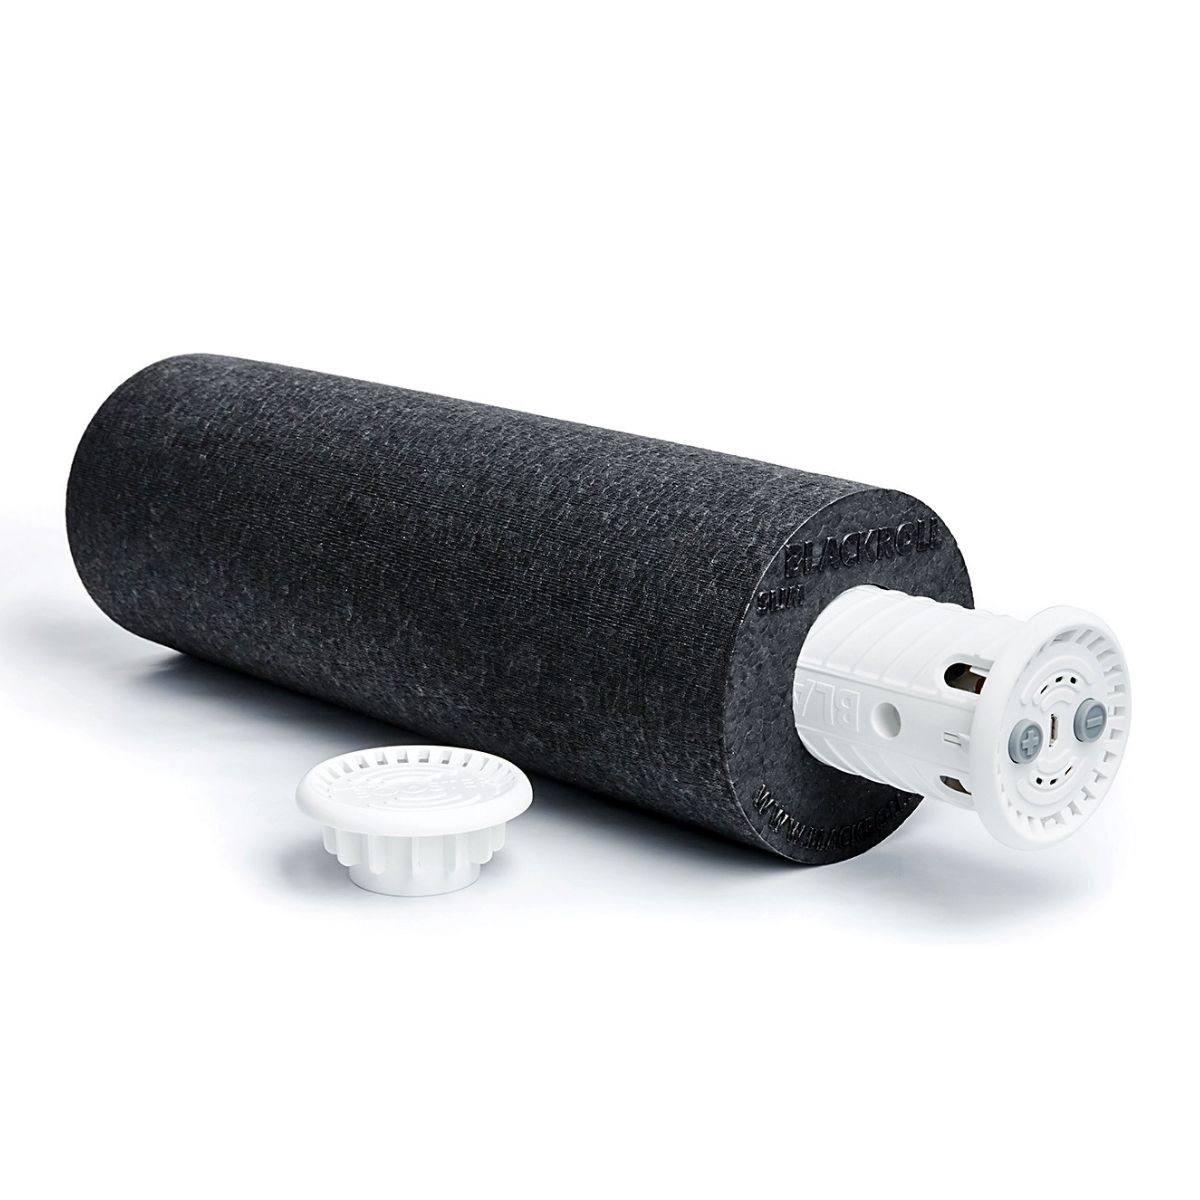 BLACKROLL® Set BOOSTER SLIM - aggiungi la vibrazione al tuo roller